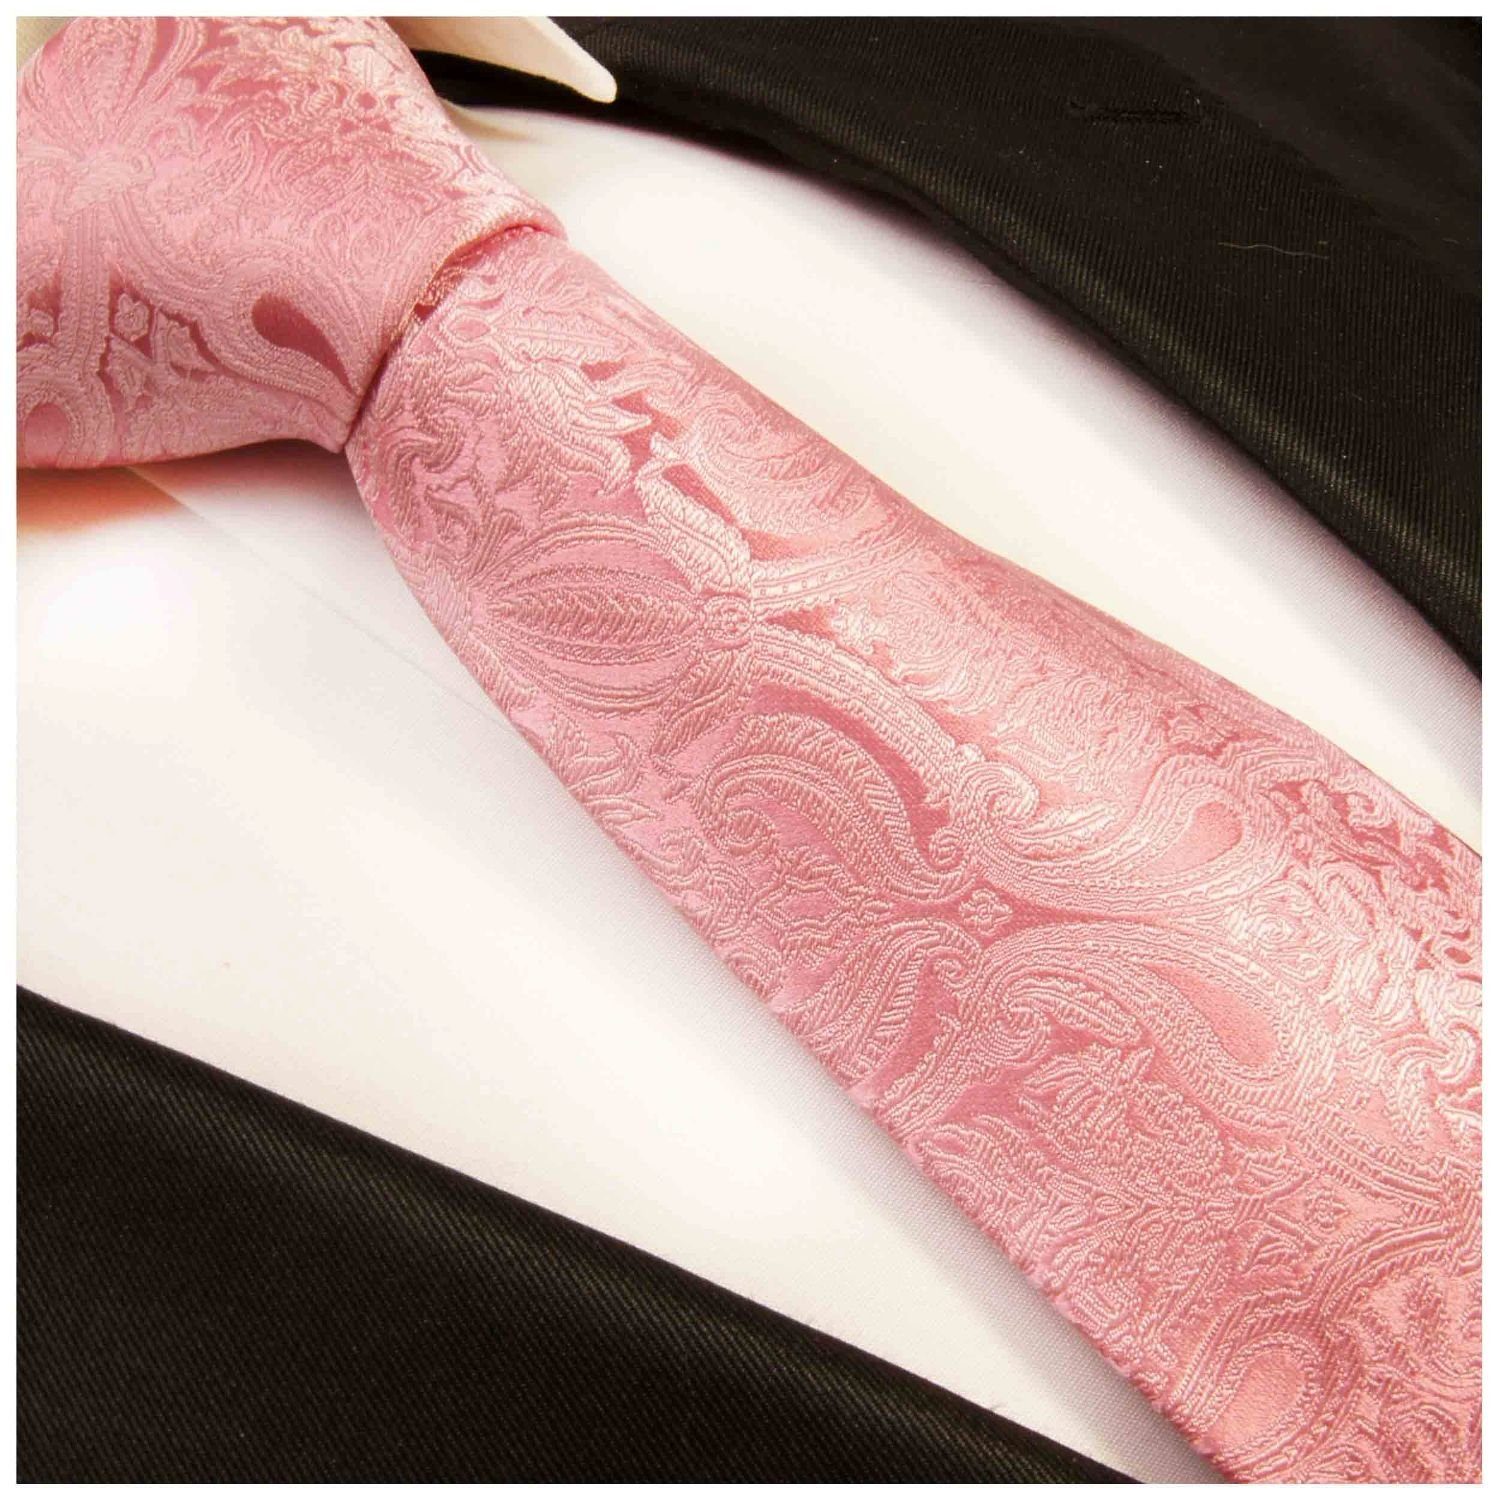 Paul Malone Krawatte Schlips modern floral pink Seidenkrawatte 100% Breit (8cm), Seide rosa Herren 366 barock